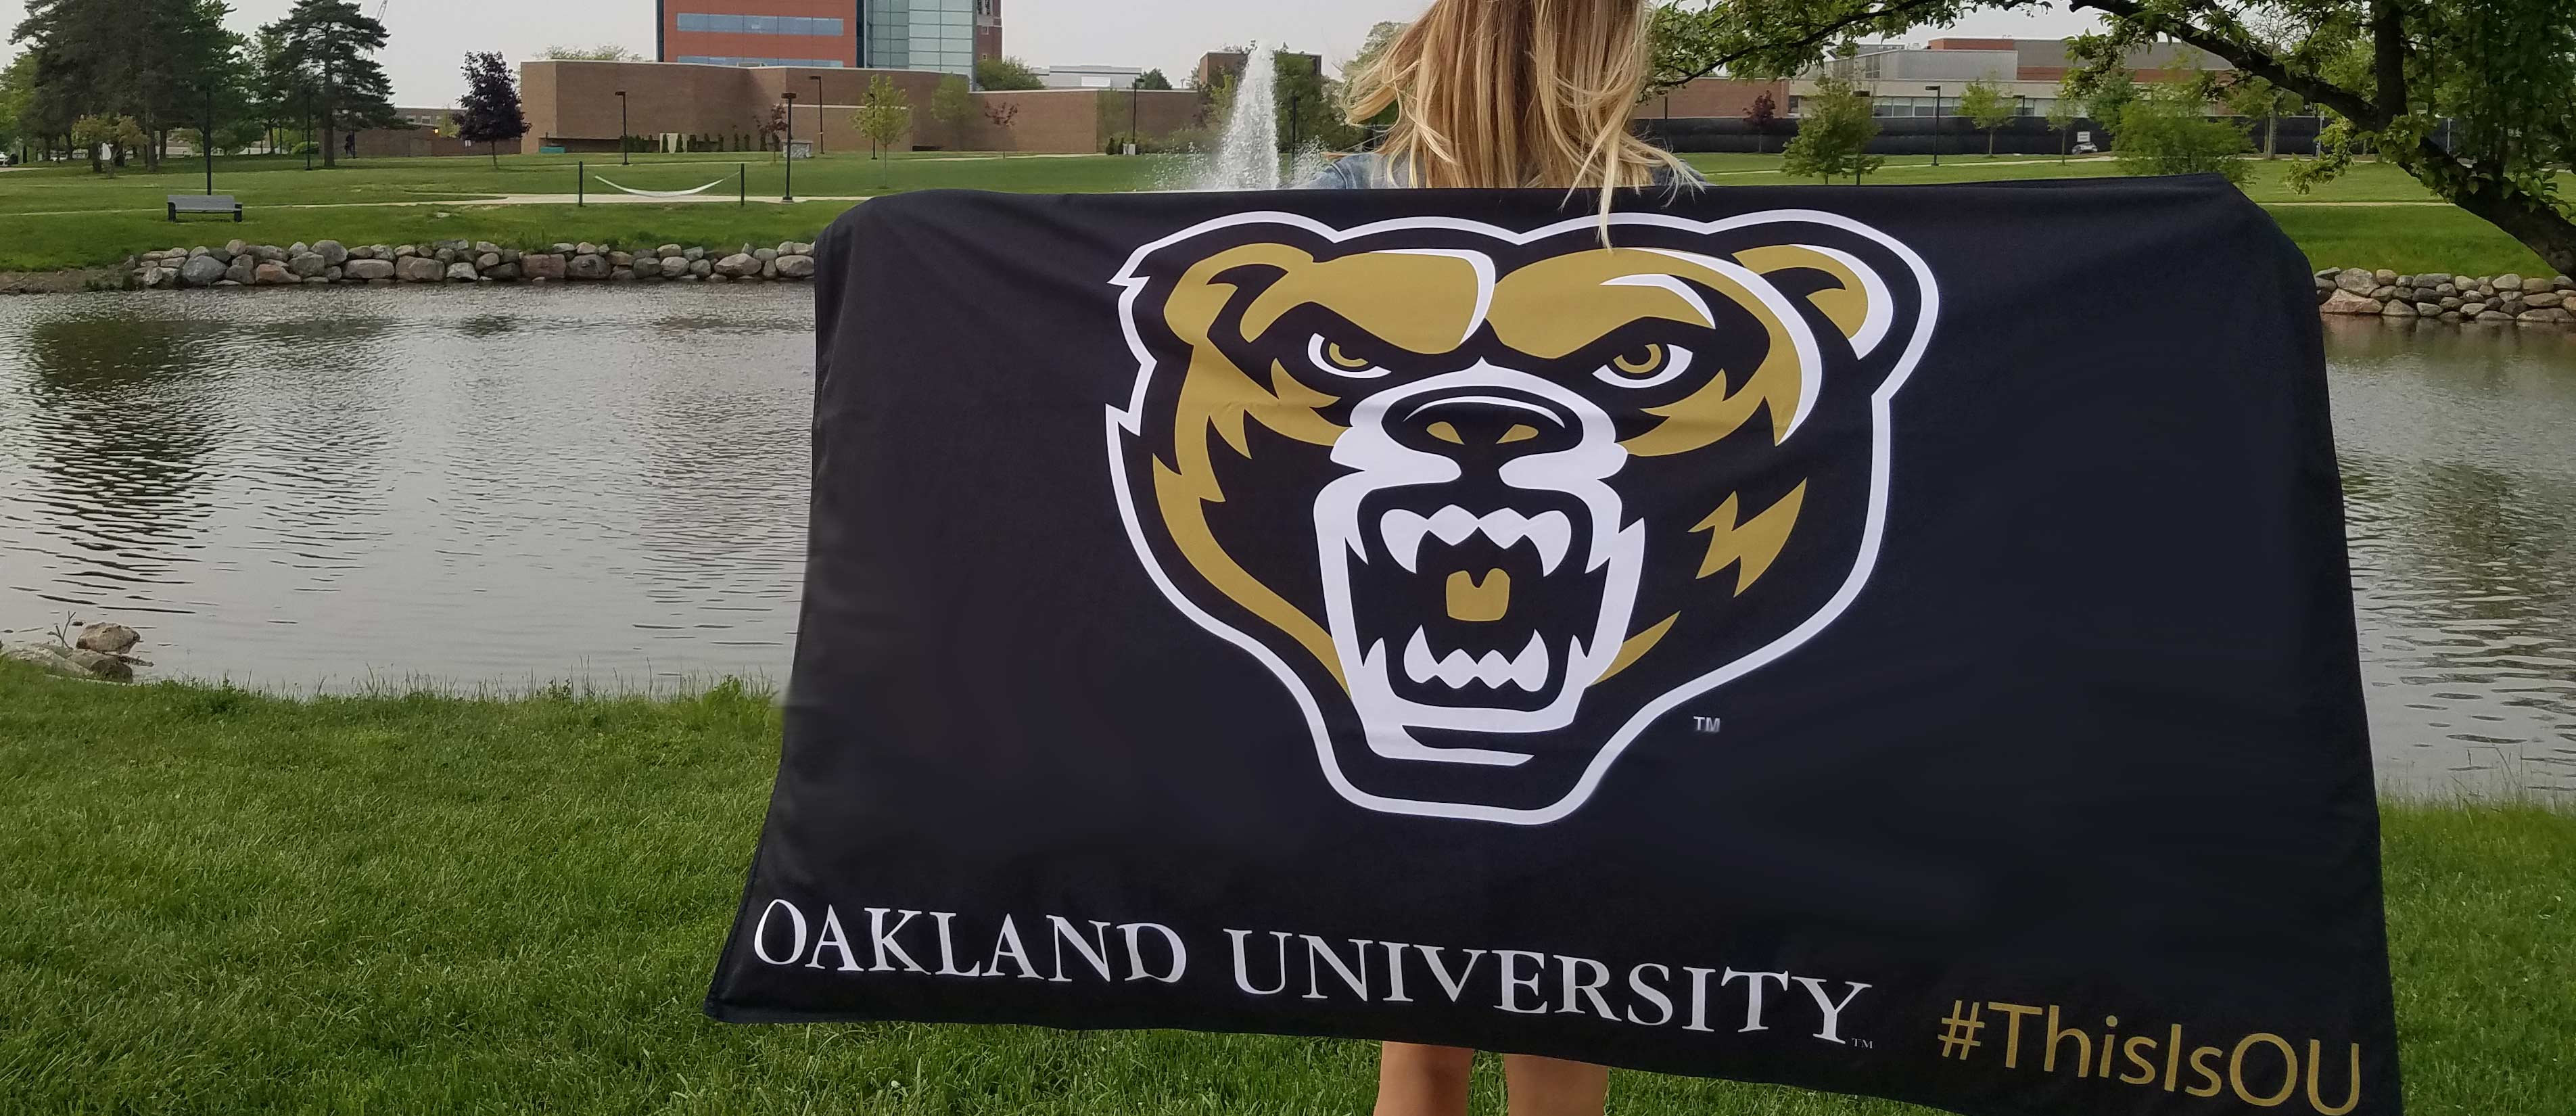 女人拿着5英尺3英尺的国旗在熊湖的前面。国旗有熊头和奥克兰大学# ThisIsOU印刷。万博ManBetX登录